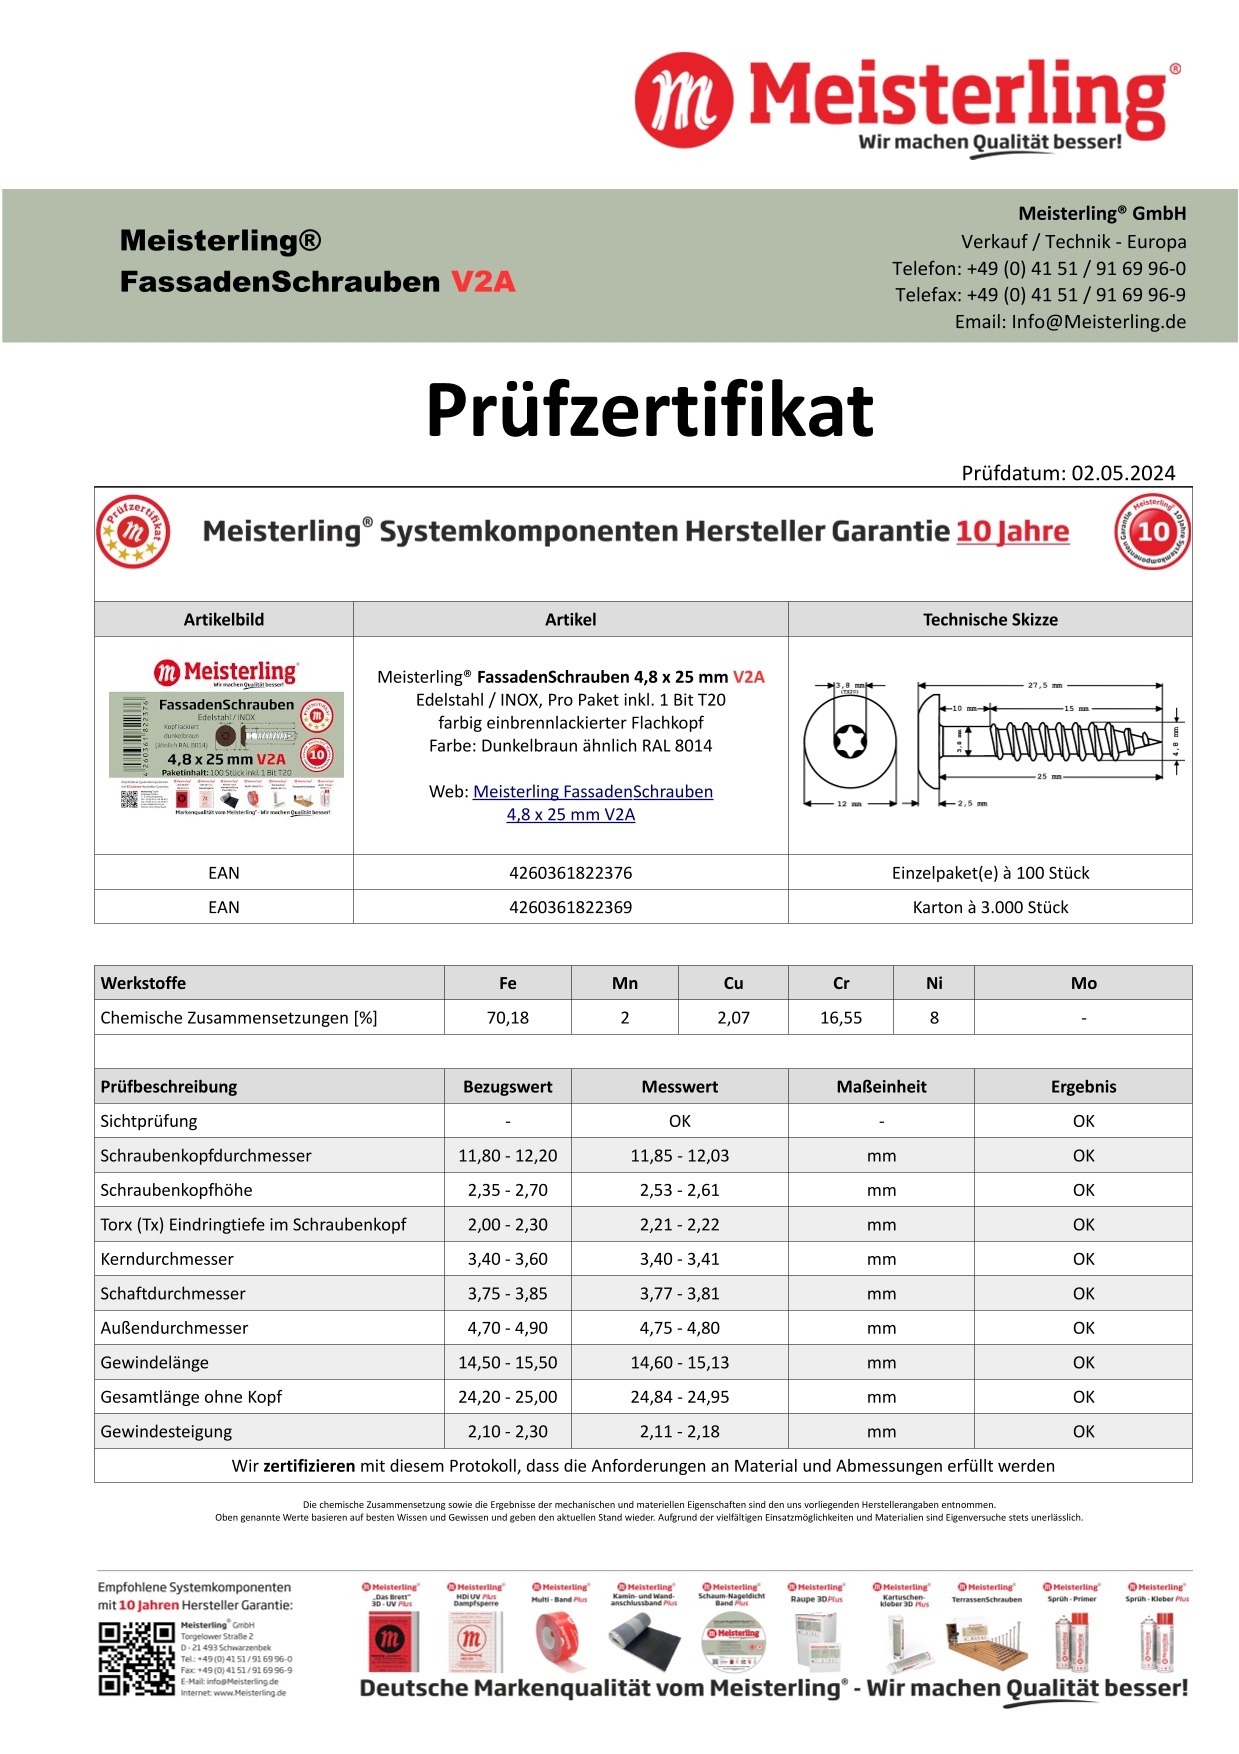 Prüfzertifikat Meisterling® FassadenSchrauben 4,8 x 25 mm V2a dunkelbraun